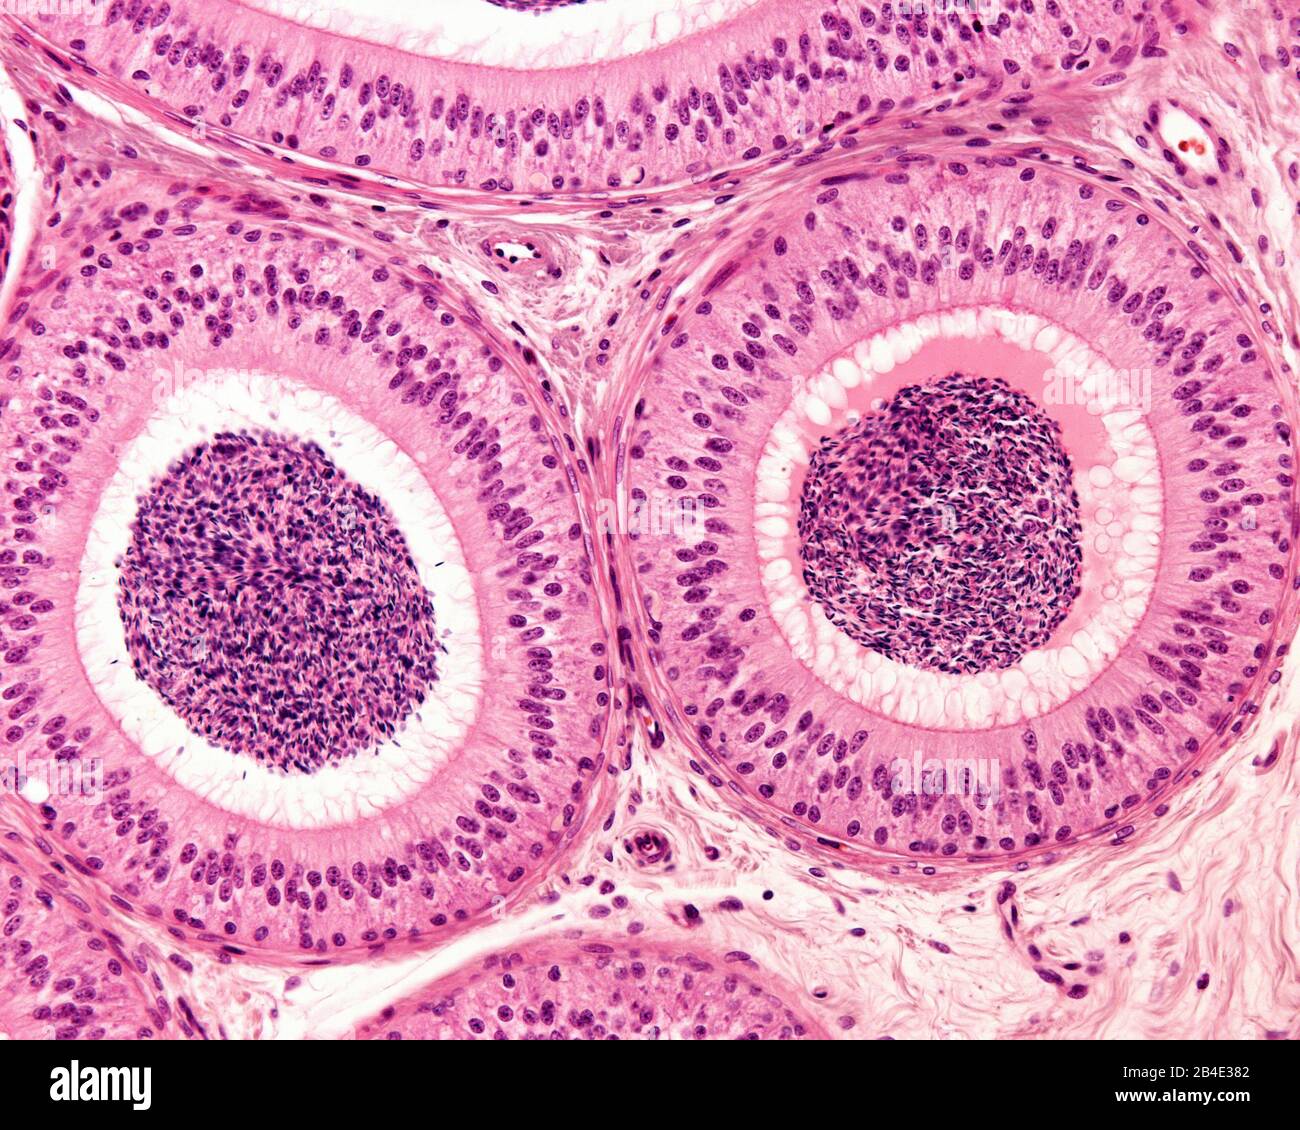 Deux sections du conduit épididymique entourées de couches concentriques de tissu fibromycculaire. L'épithélium pseudostratifié se compose de colonnes hautes Banque D'Images